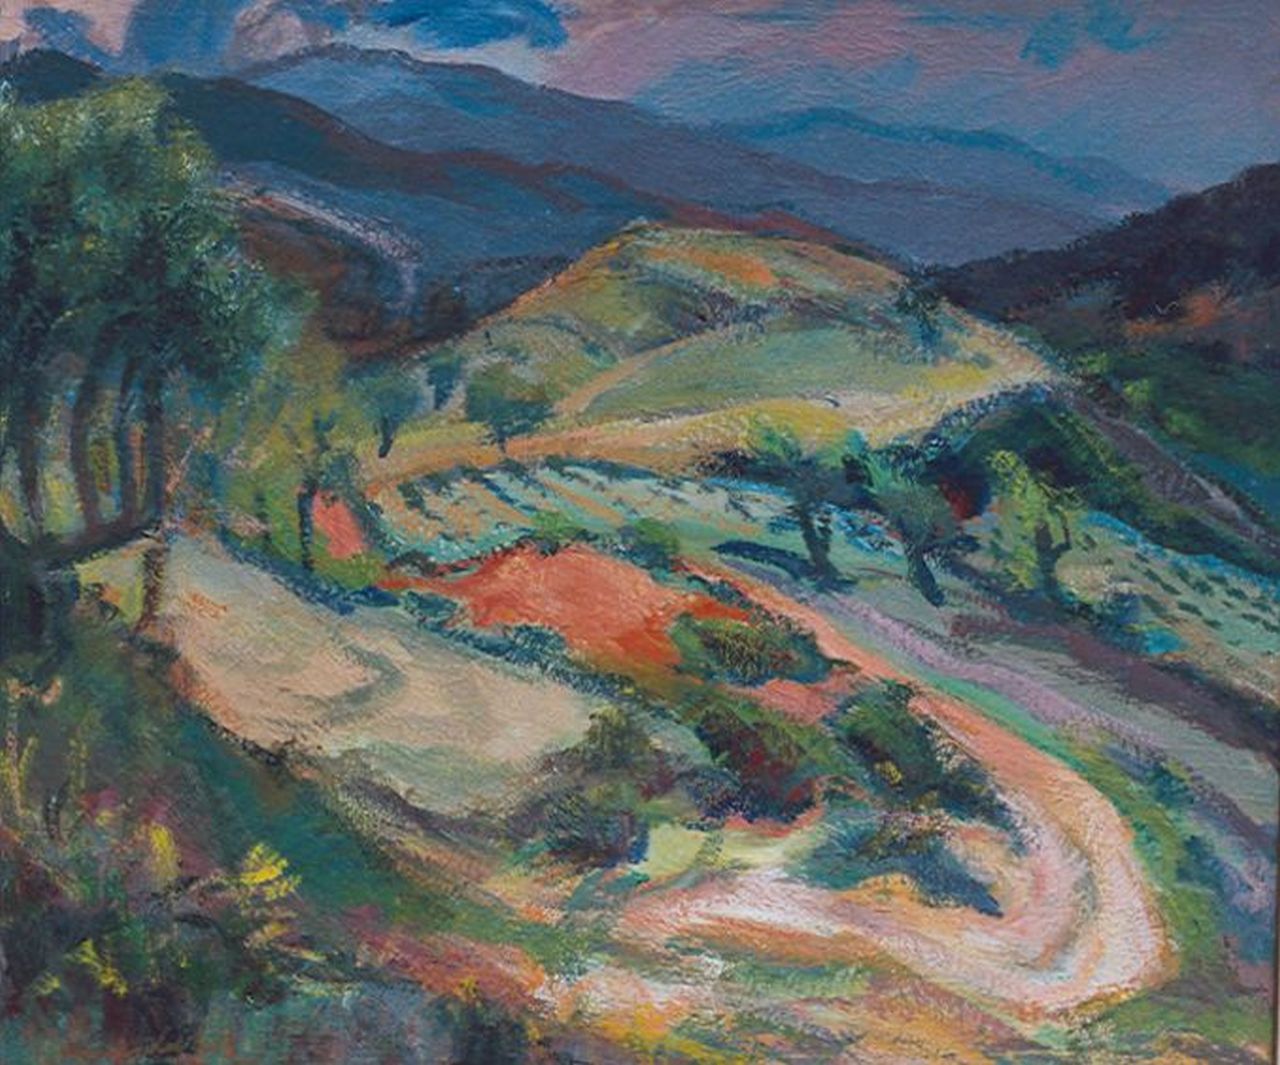 Vries J. de | Jannes de Vries, A hilly landscape,France, Öl auf Leinwand 60,4 x 70,2 cm, signed l.l.